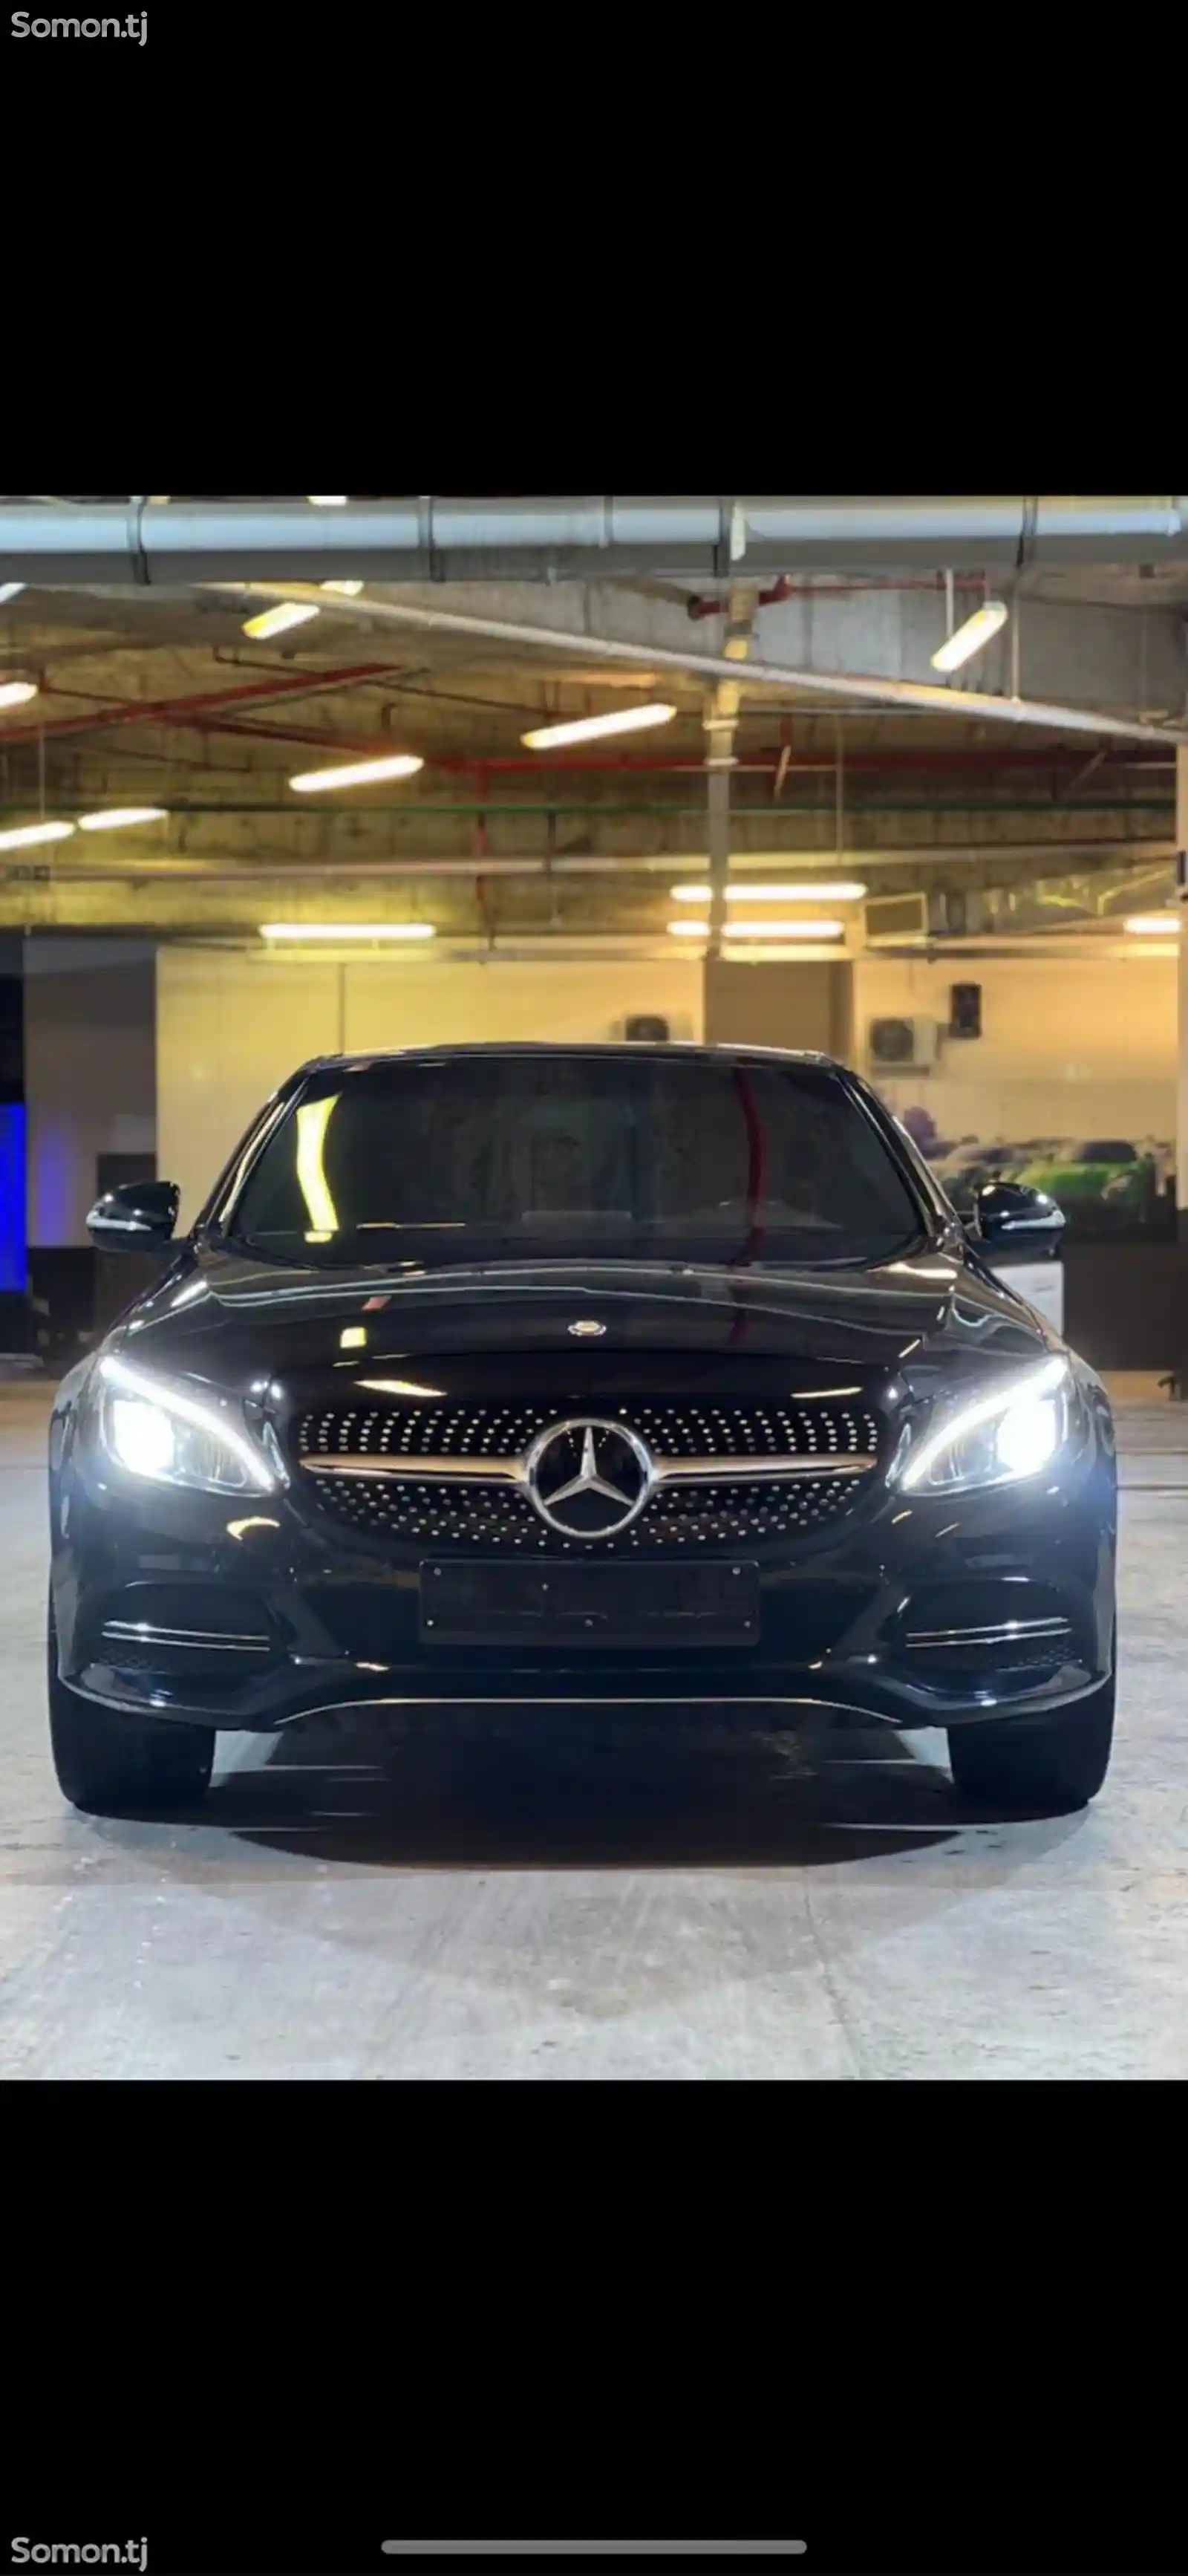 Mercedes-Benz C class, 2015-2